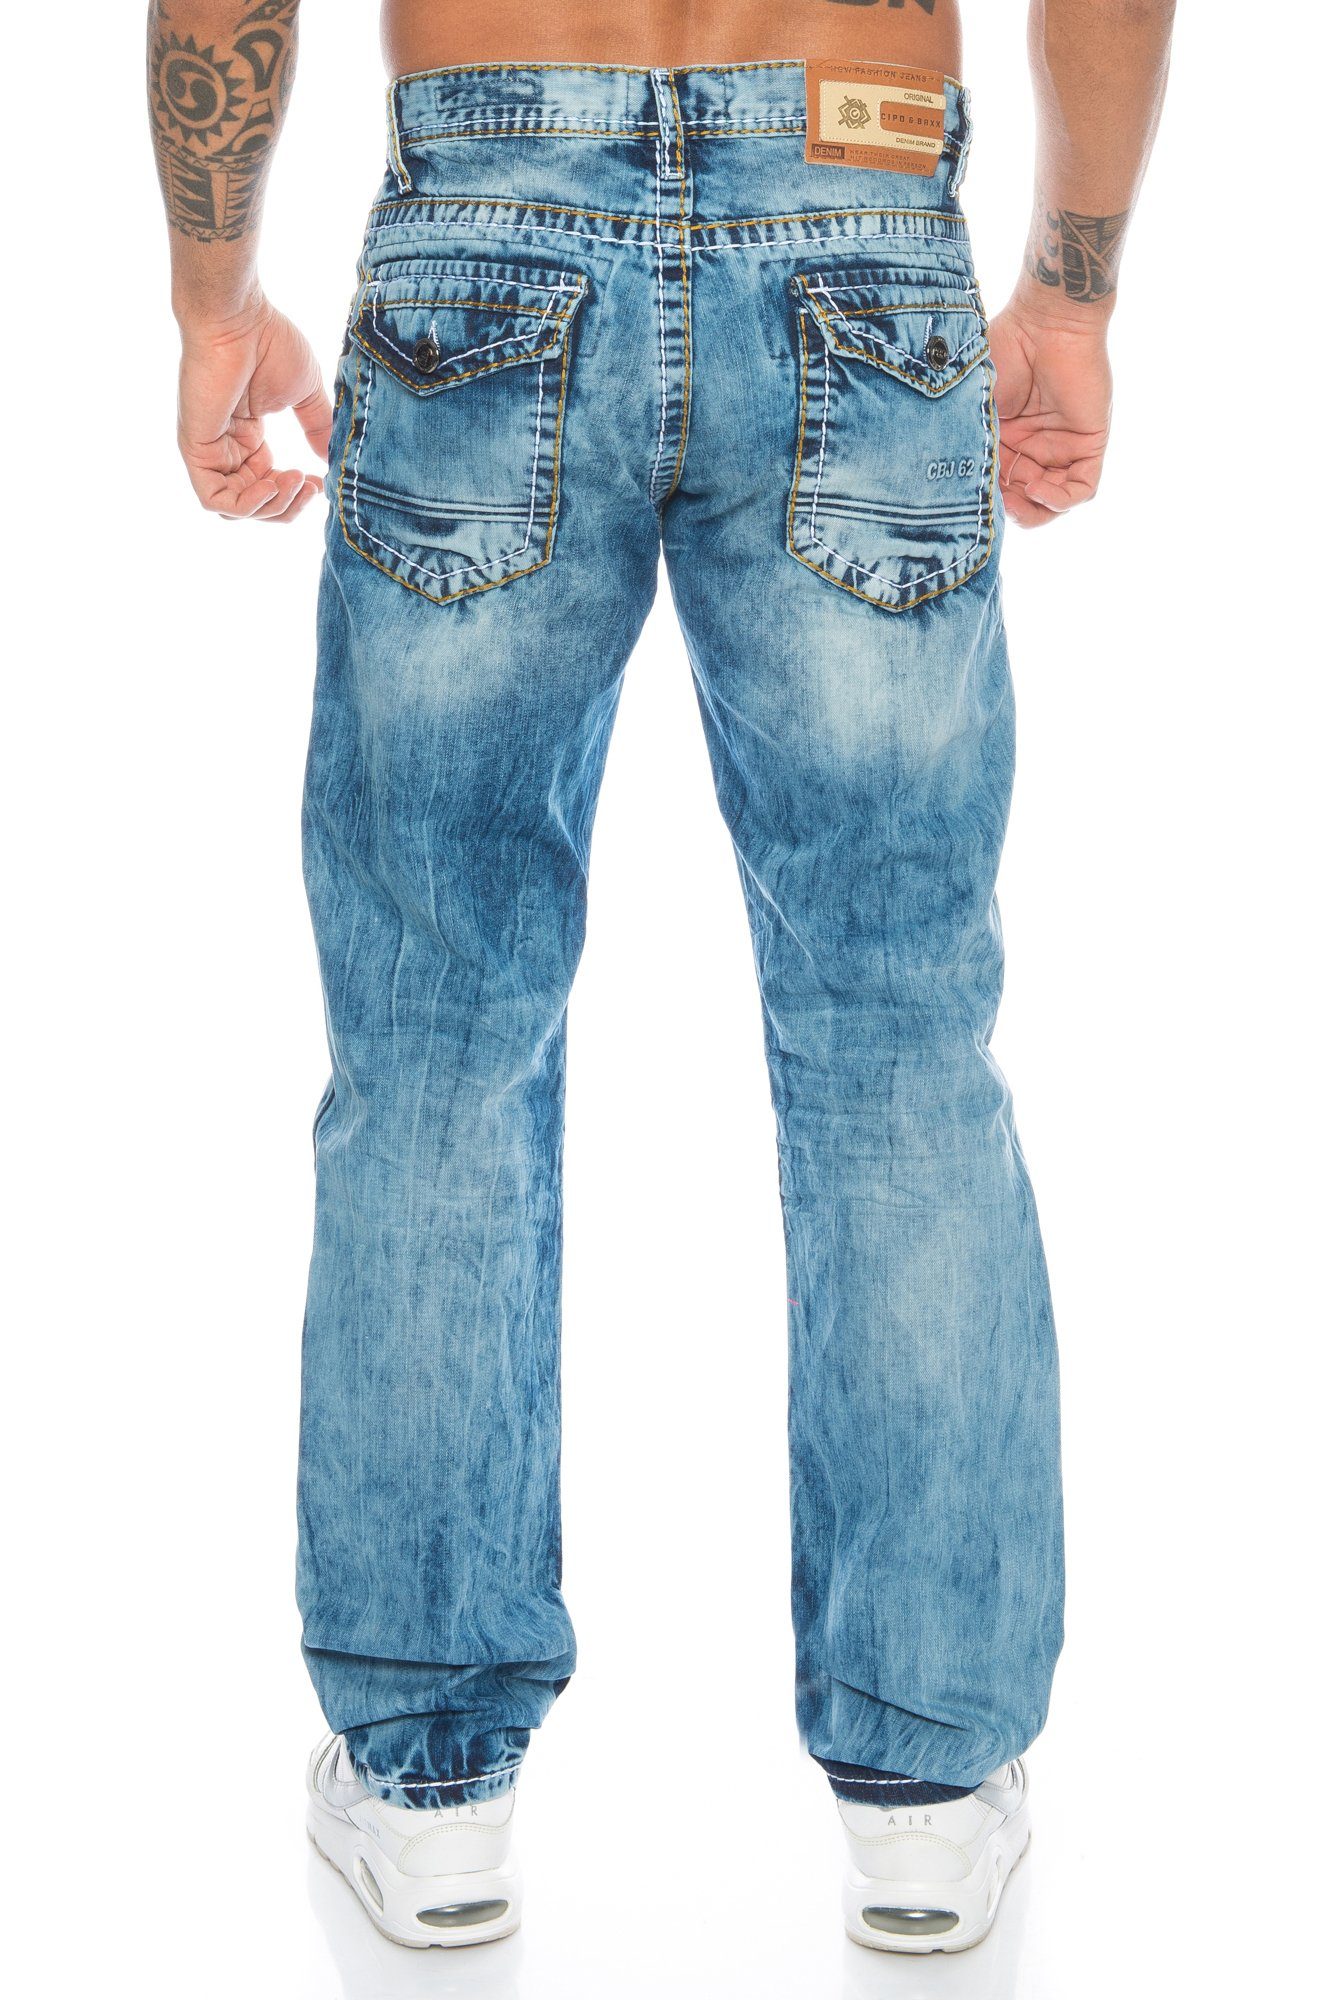 Labelpatch mit im und kleine Regular-fit-Jeans vorne & Akzente, Kontrastnähte Jeans Hose und Stoff dicke Herren Cipo Verschiedene Branding Baxx ausgefallenem Kontrastnahtdesign